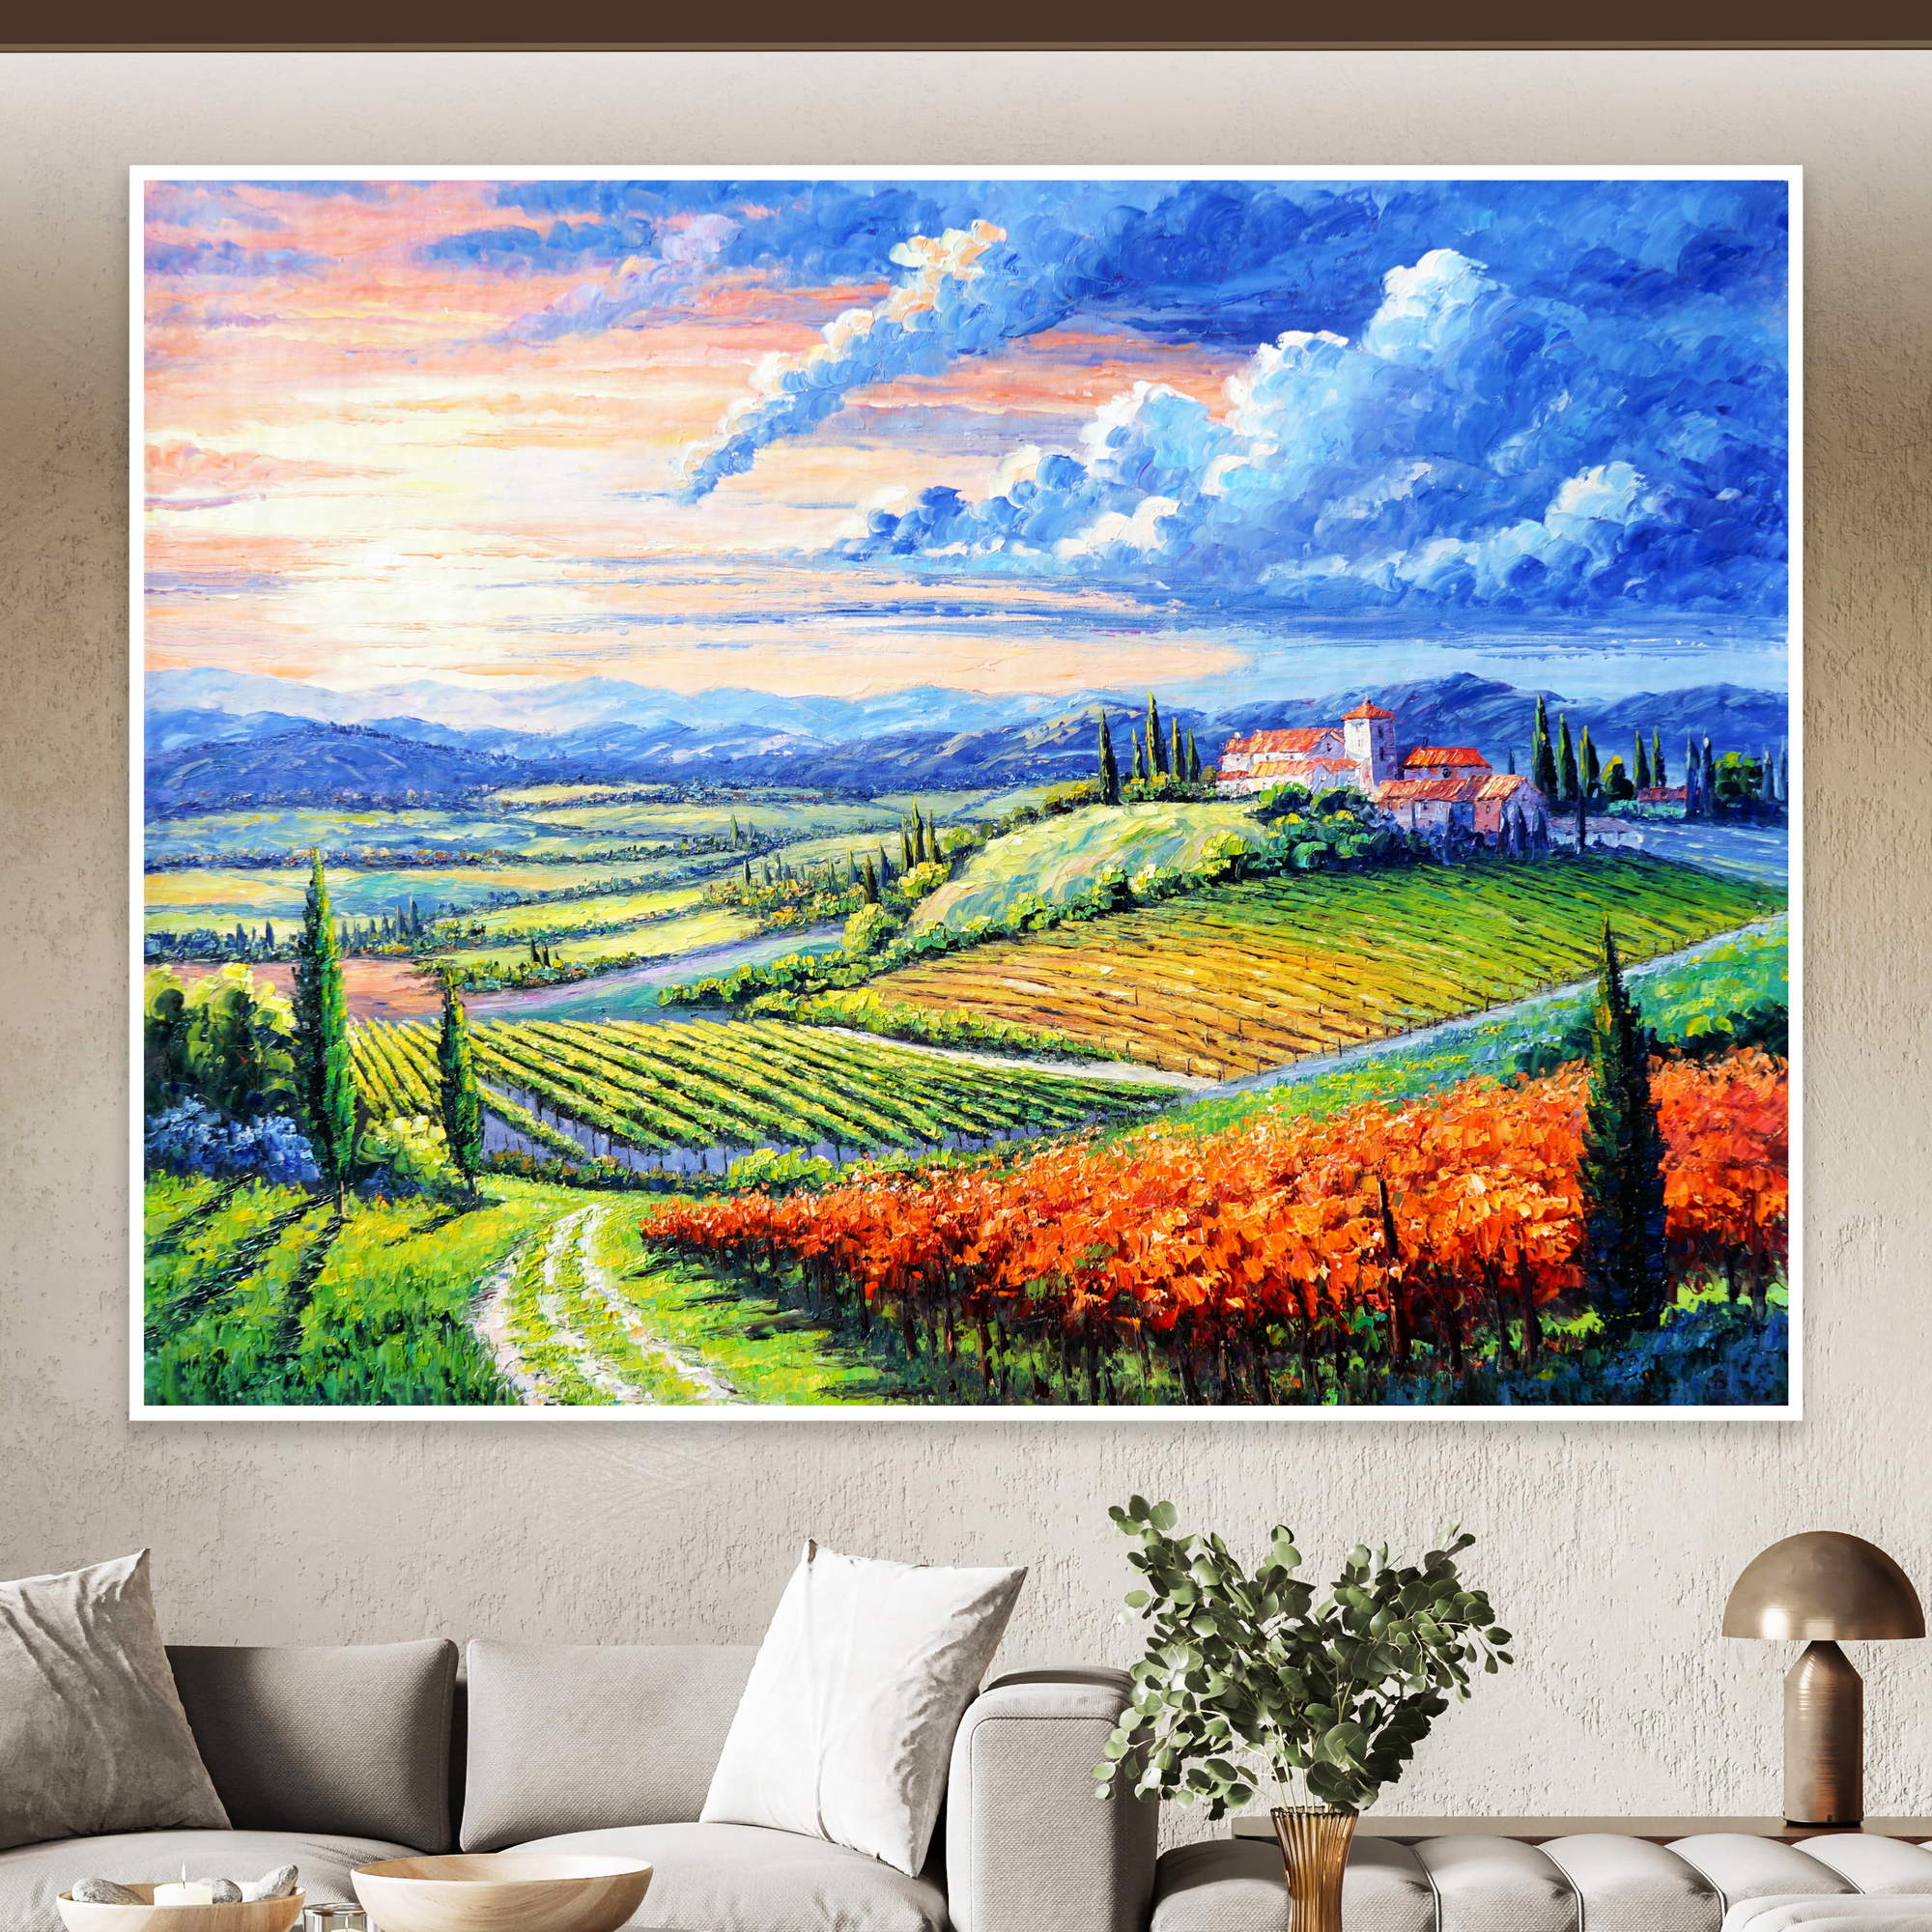 Dipinto di un paesaggio collinare al calar del sole con campi coltivati, borgo medievale e cipressi.